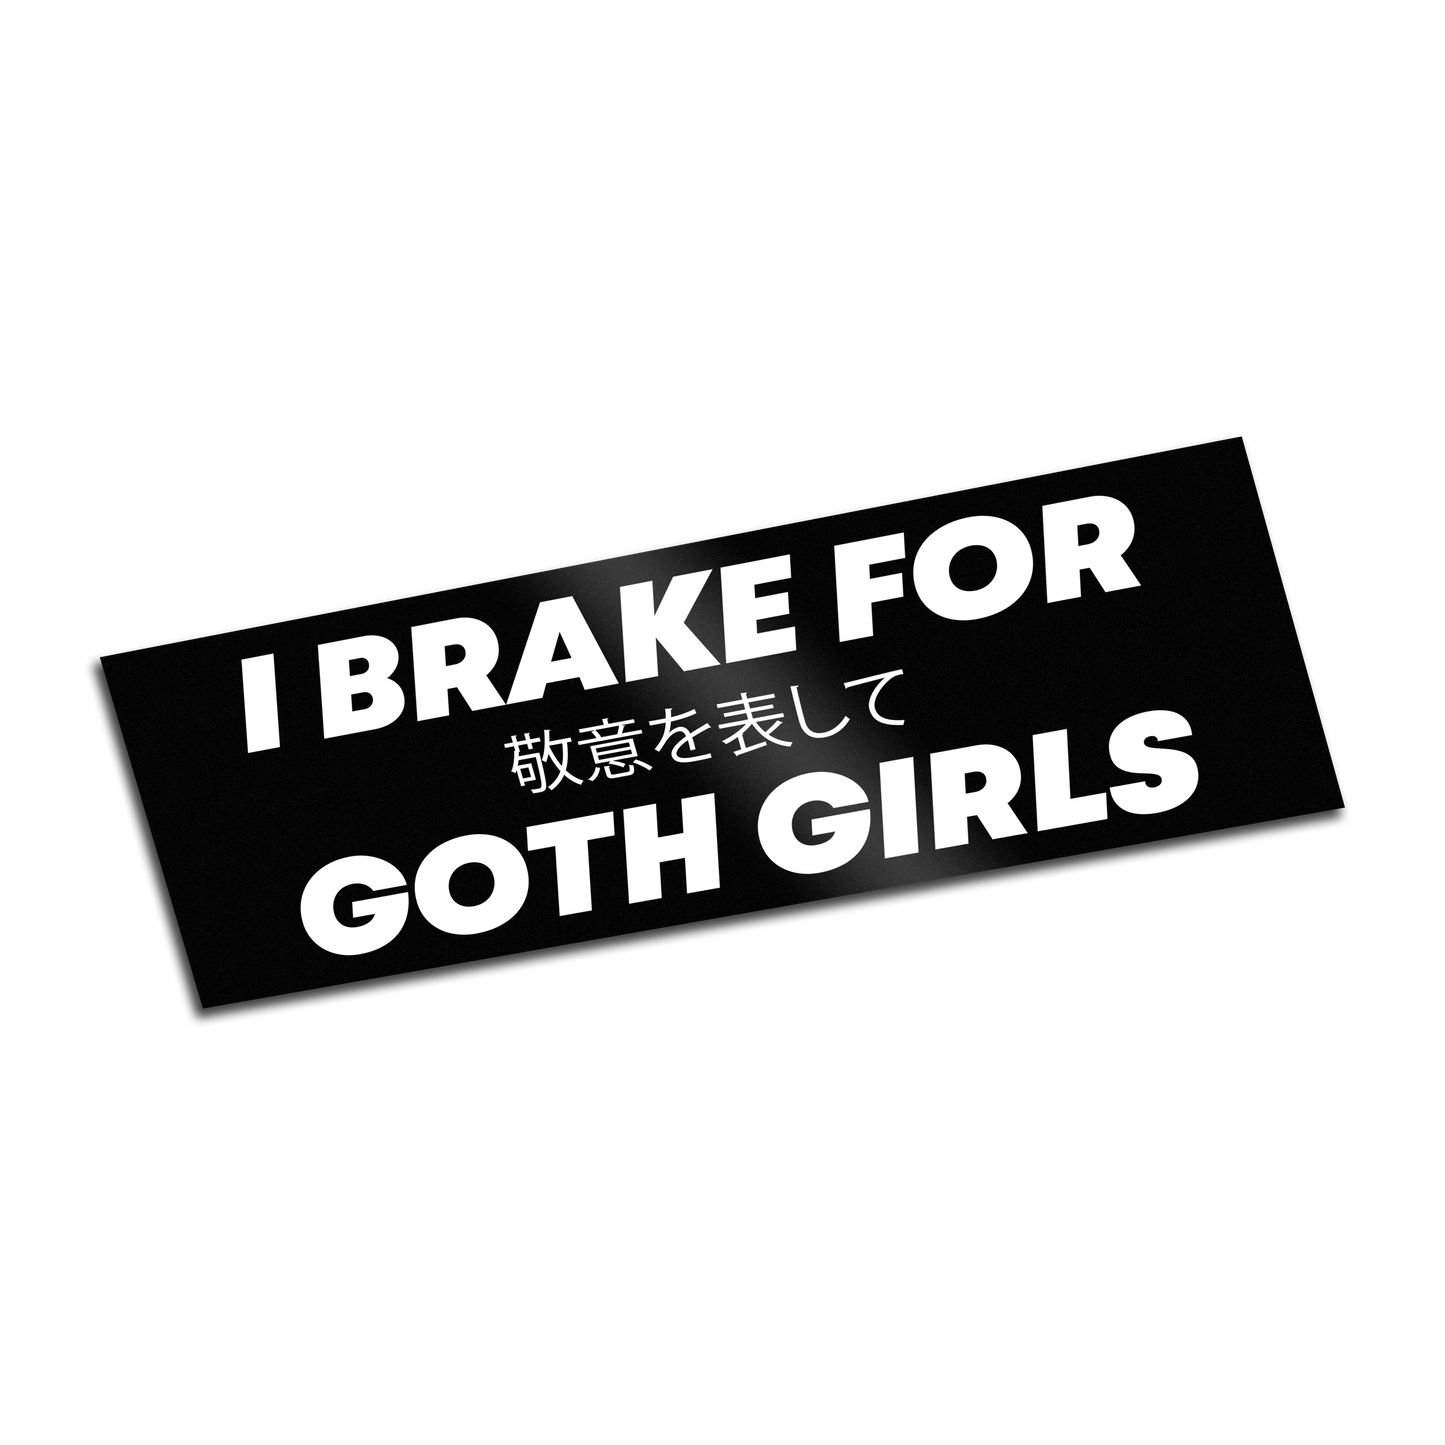 I Brake For Goth Girls